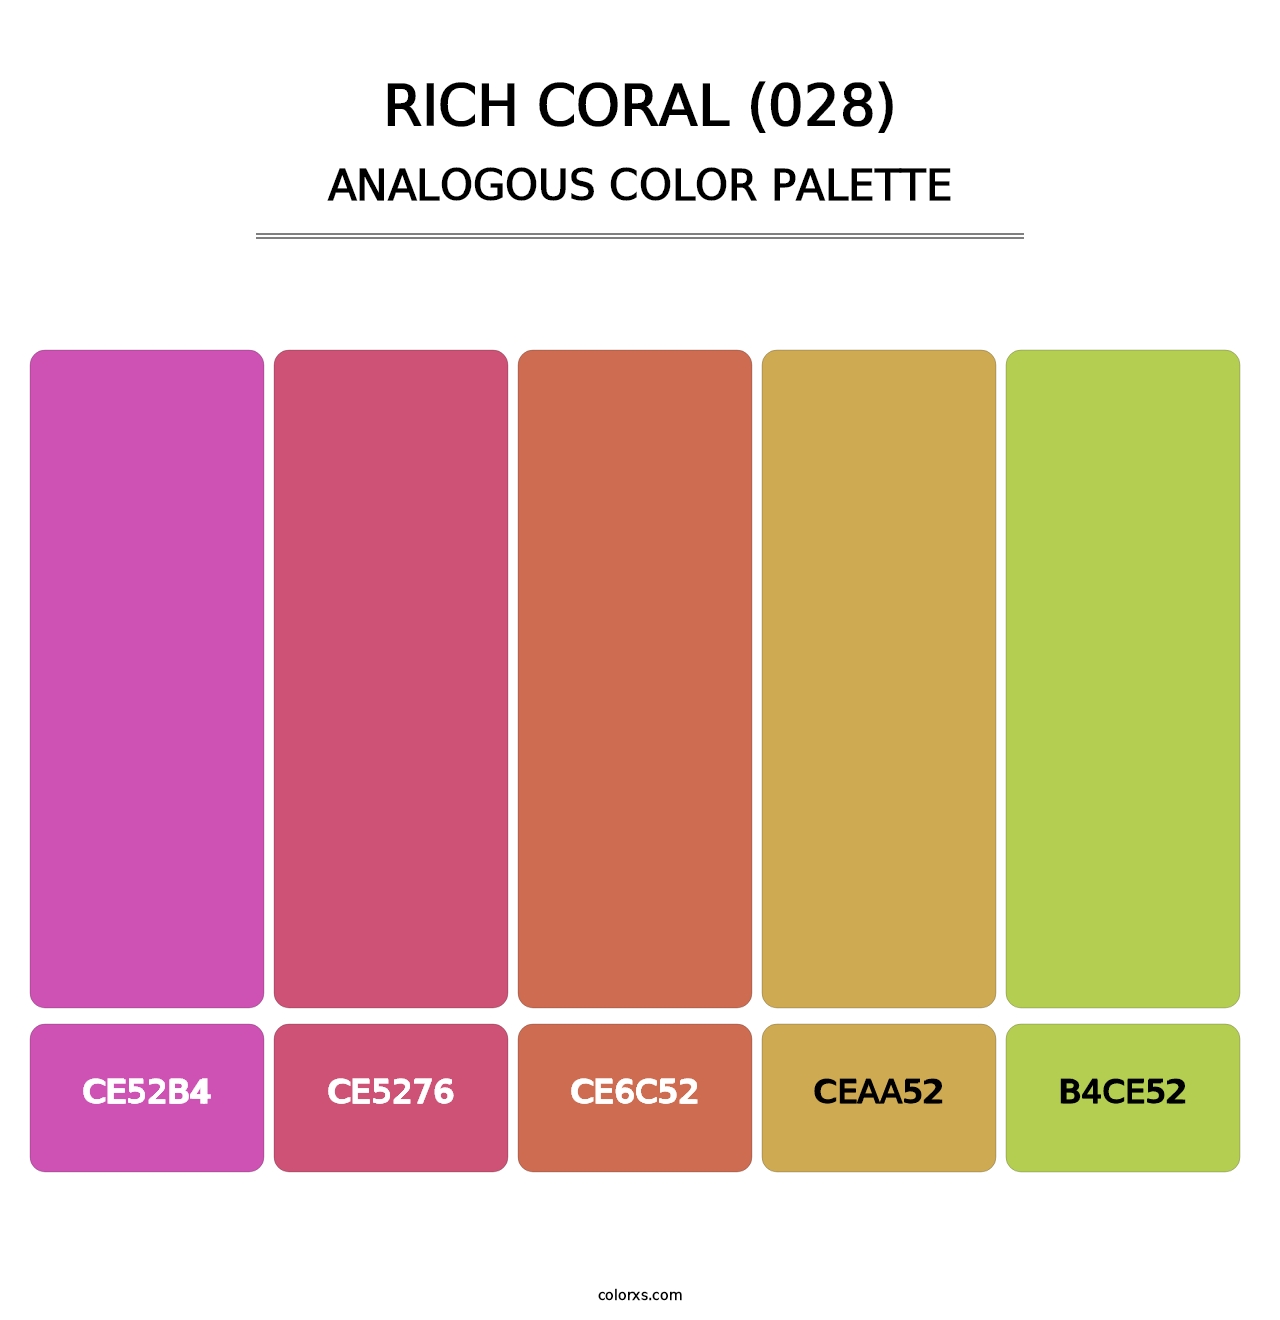 Rich Coral (028) - Analogous Color Palette